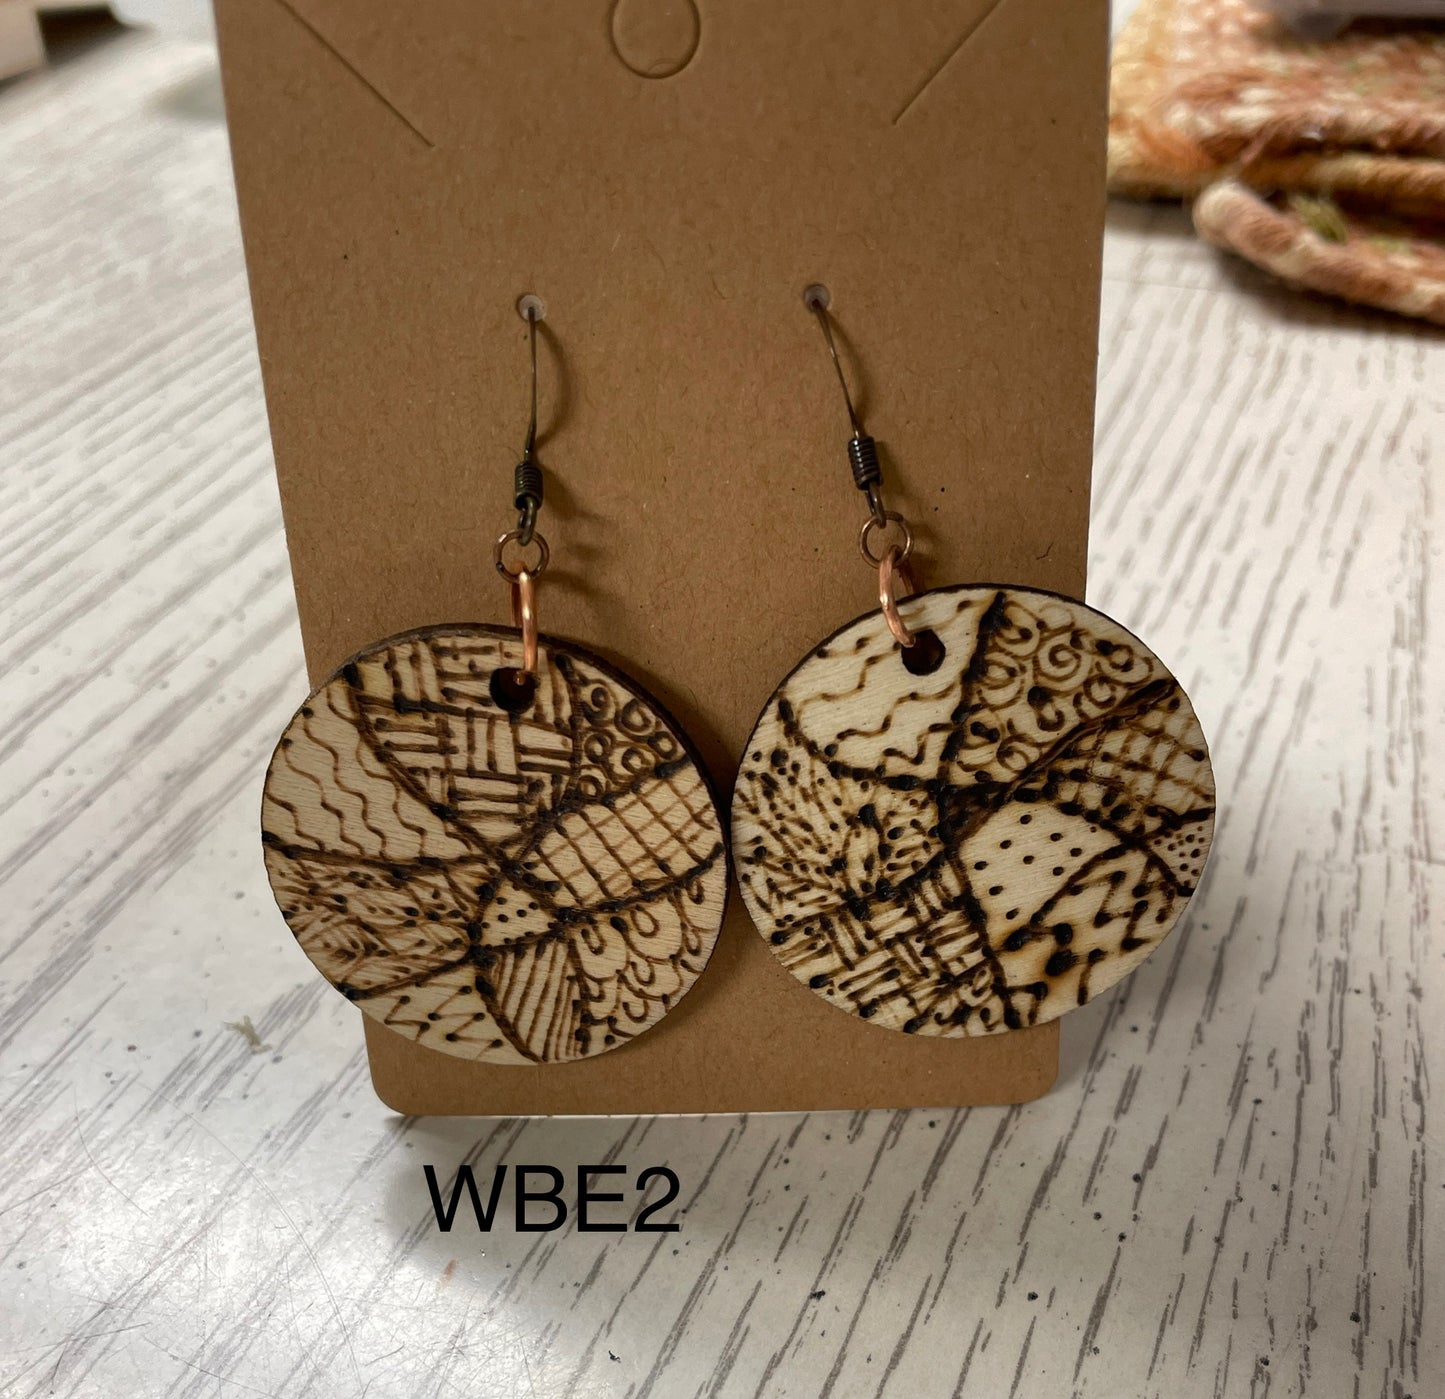 Wood burned quilt pattern earrings WBE2